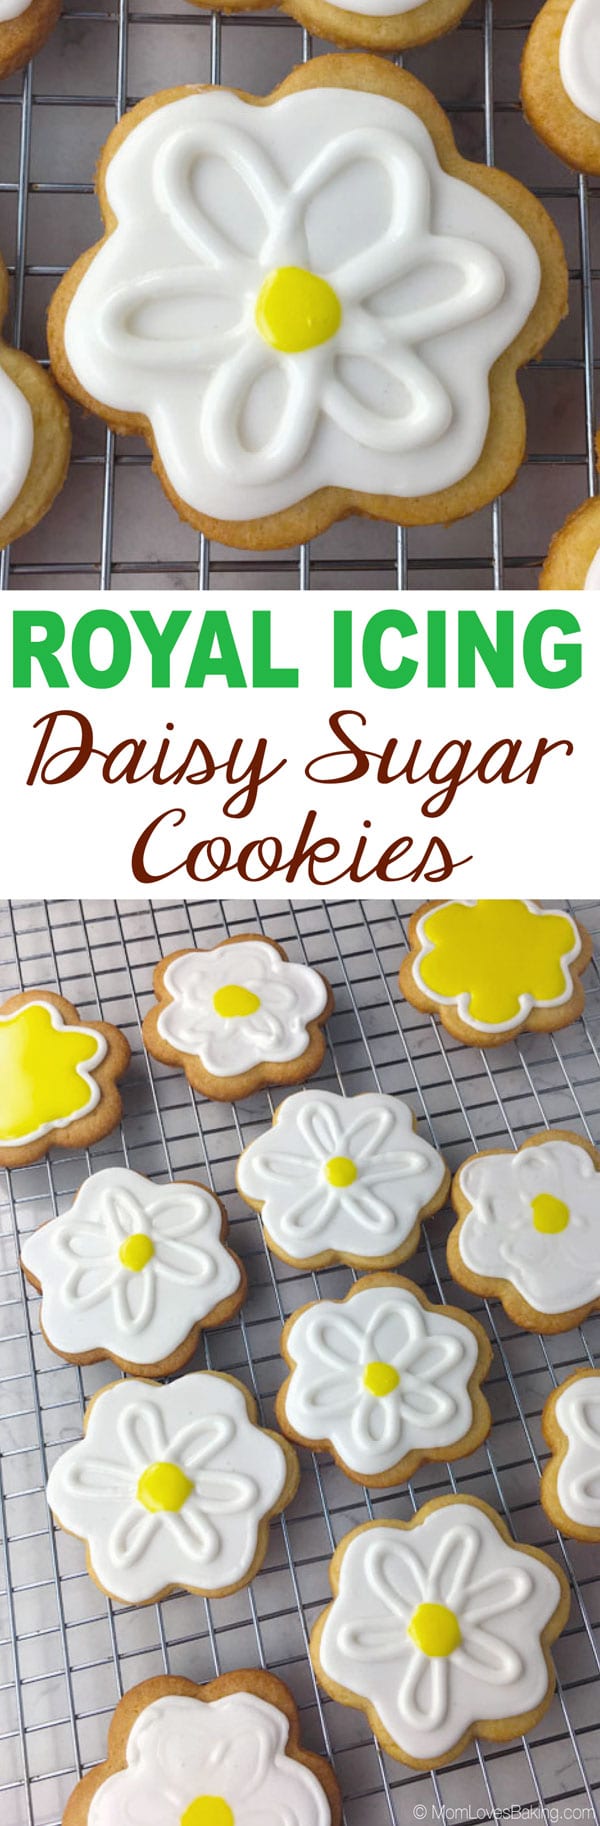 Royal Icing Daisy Sugar Cookies